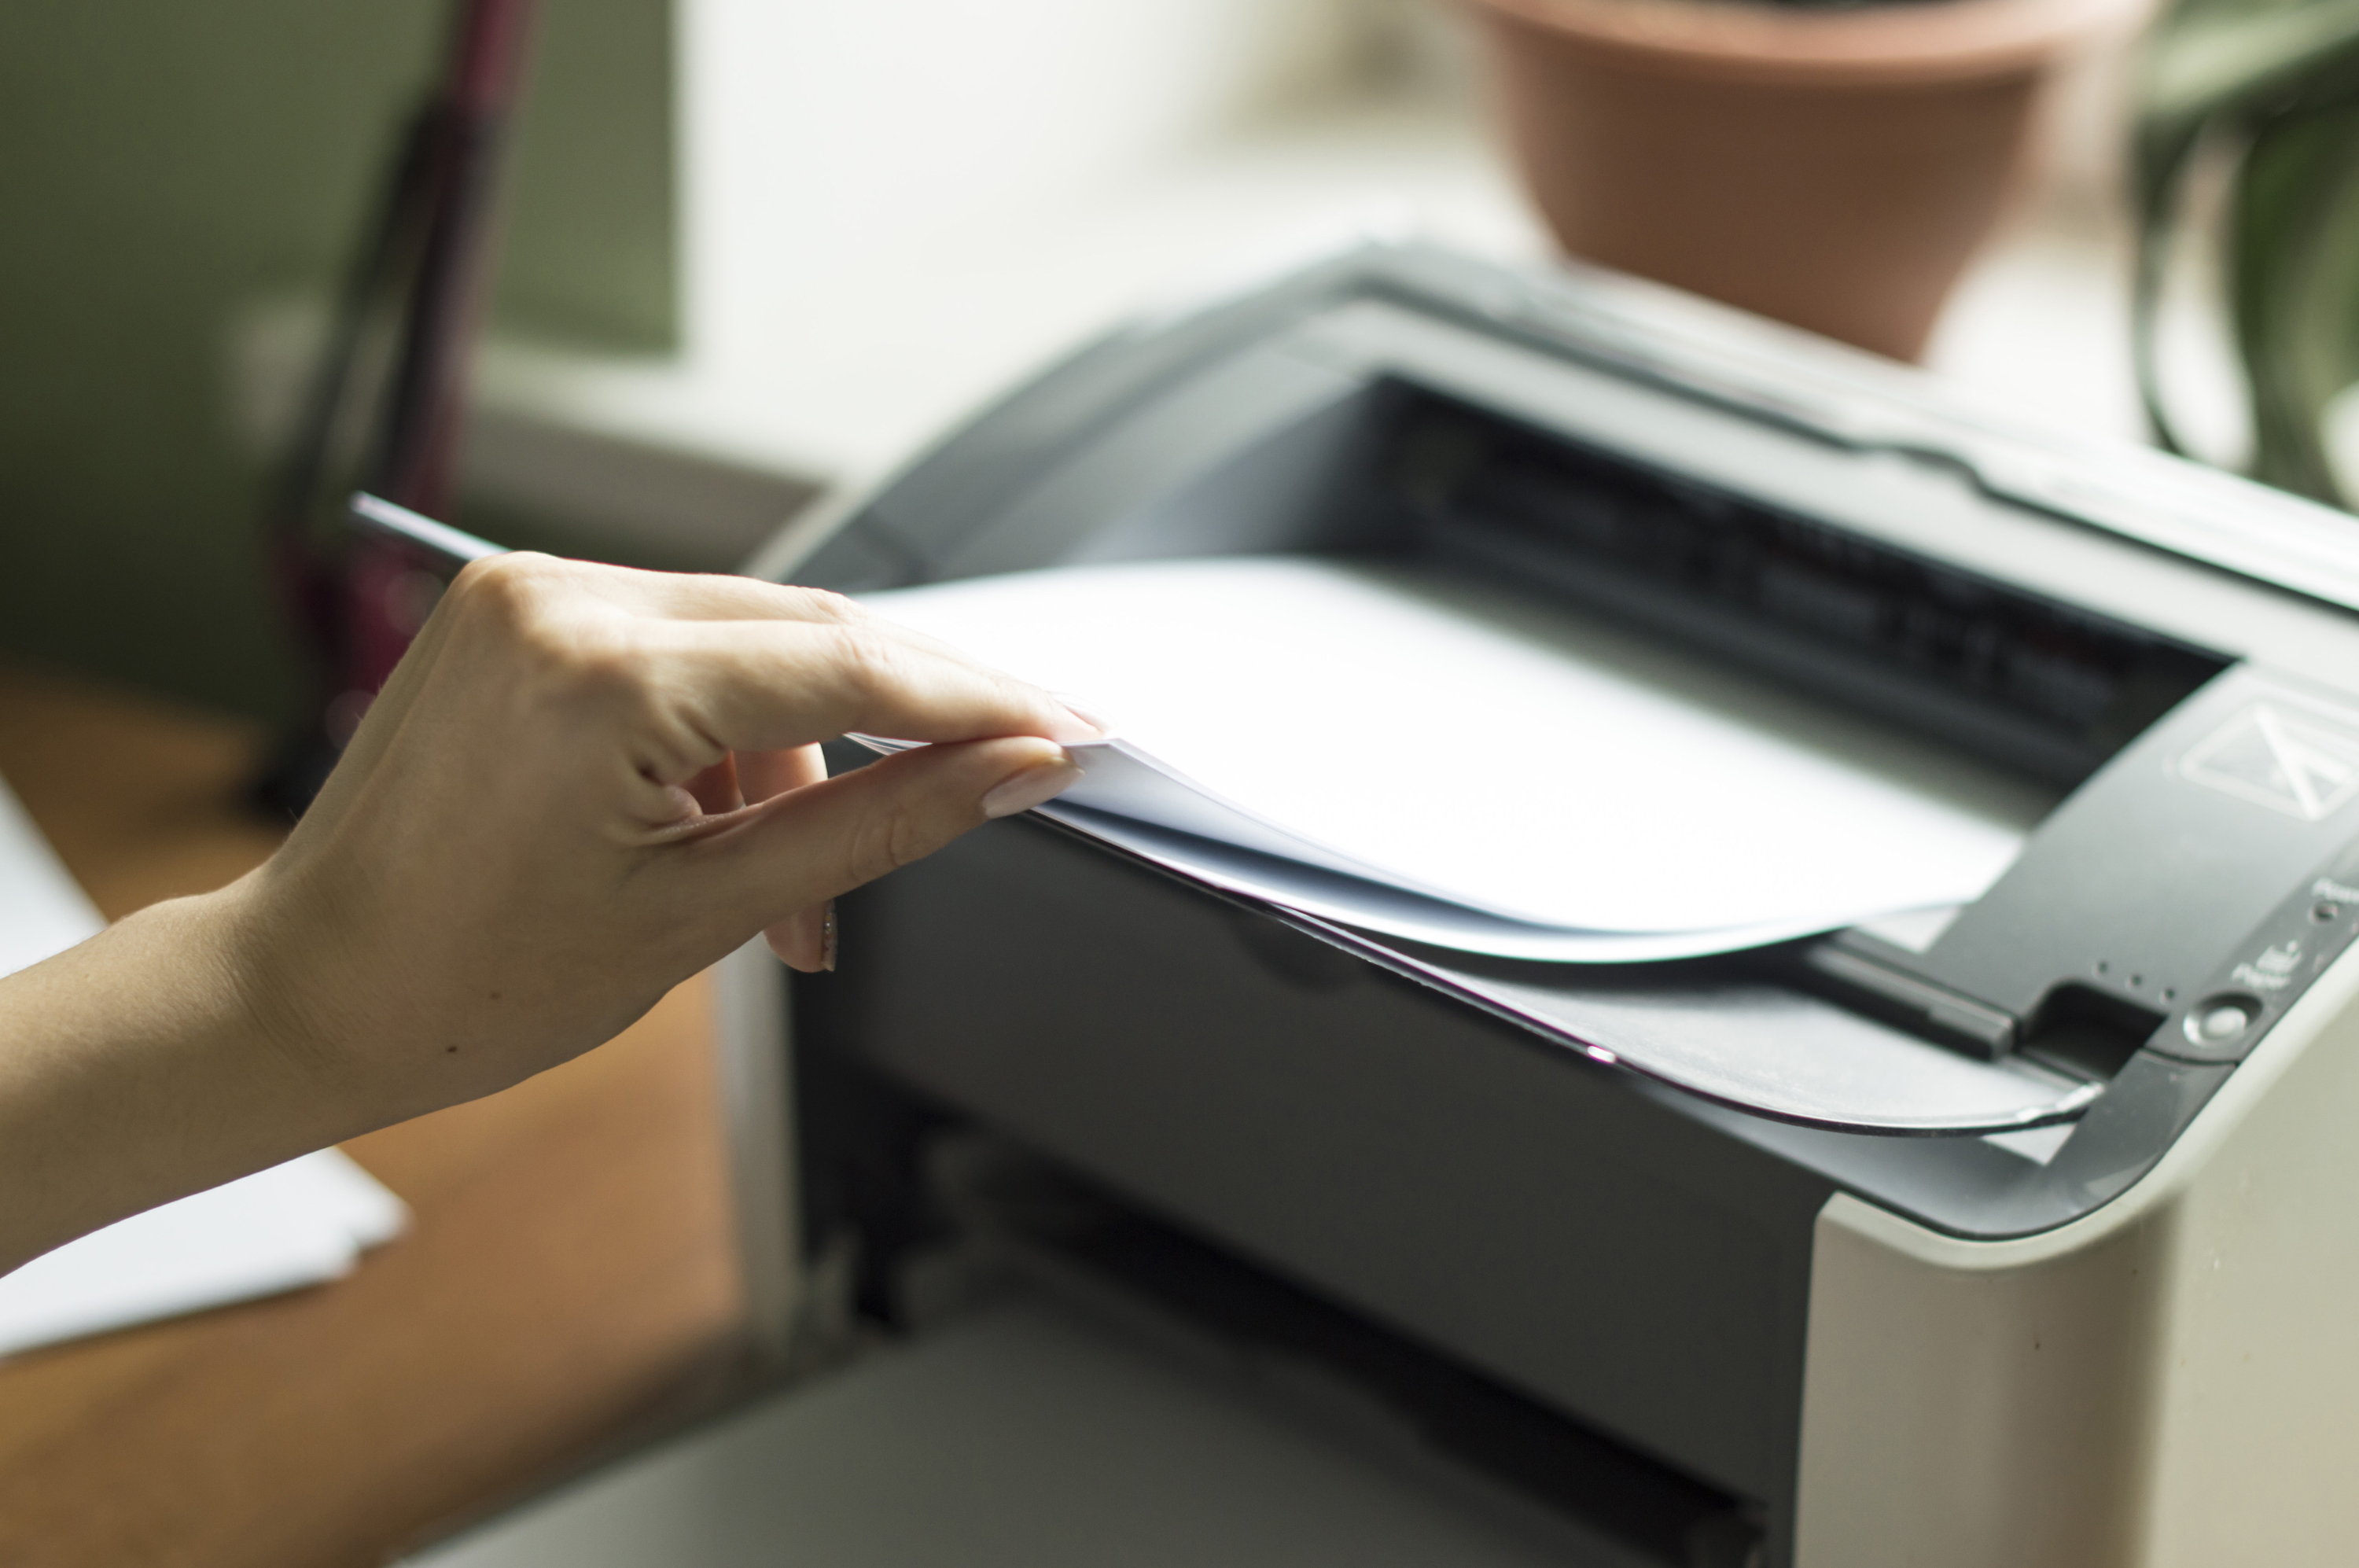 Принтер для распечатки документов. Бумага для принтера. Офисная бумага. Печать документов на принтере. Распечатка документов на принтере.